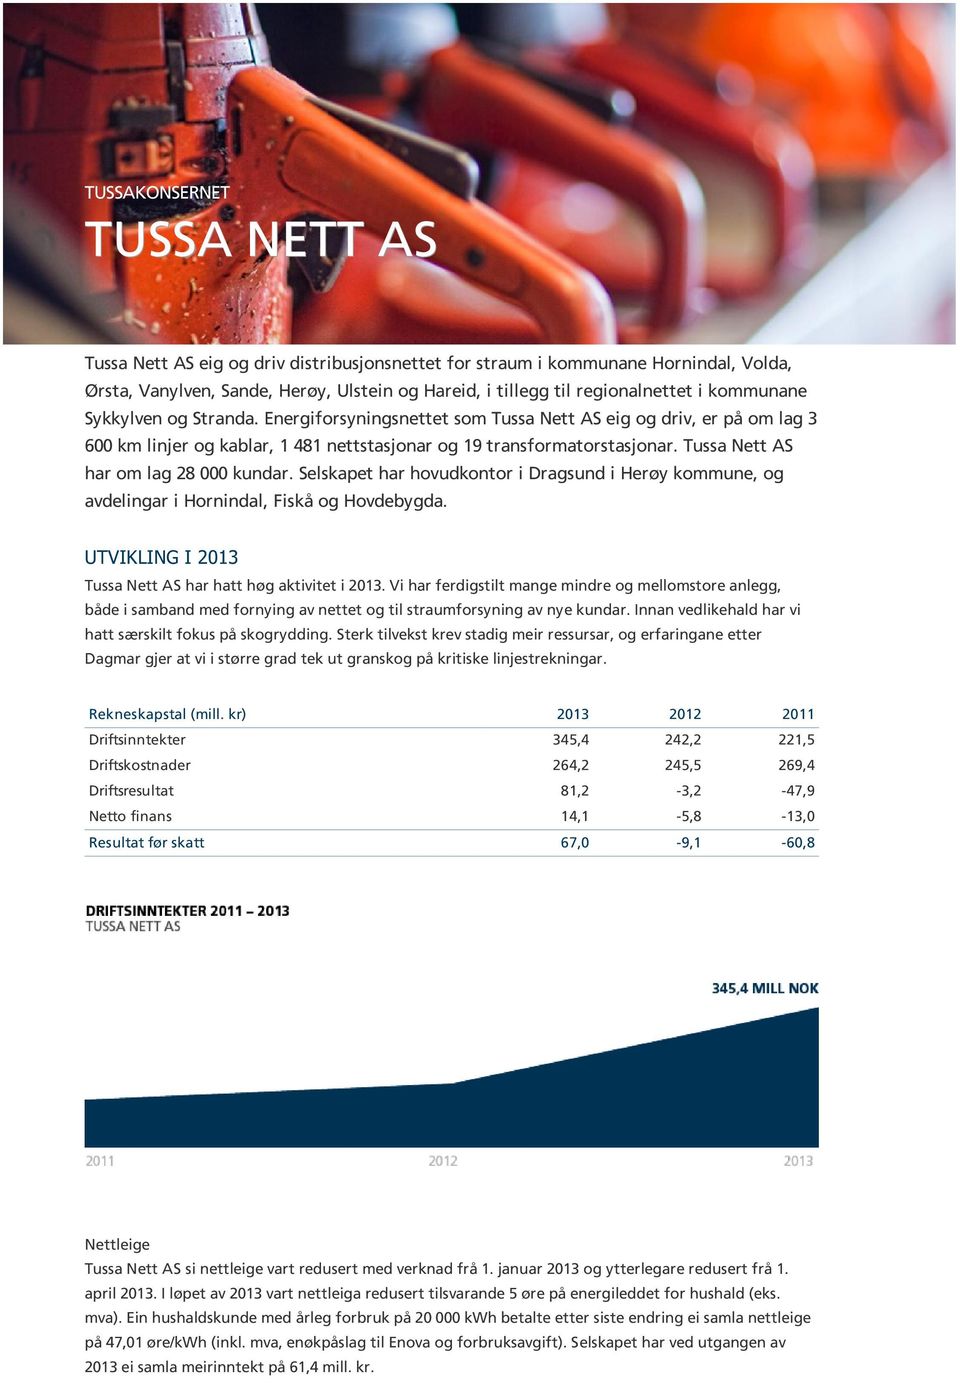 Tussa Nett AS har om lag 28 000 kundar. Selskapet har hovudkontor i Dragsund i Herøy kommune, og avdelingar i Hornindal, Fiskå og Hovdebygda.